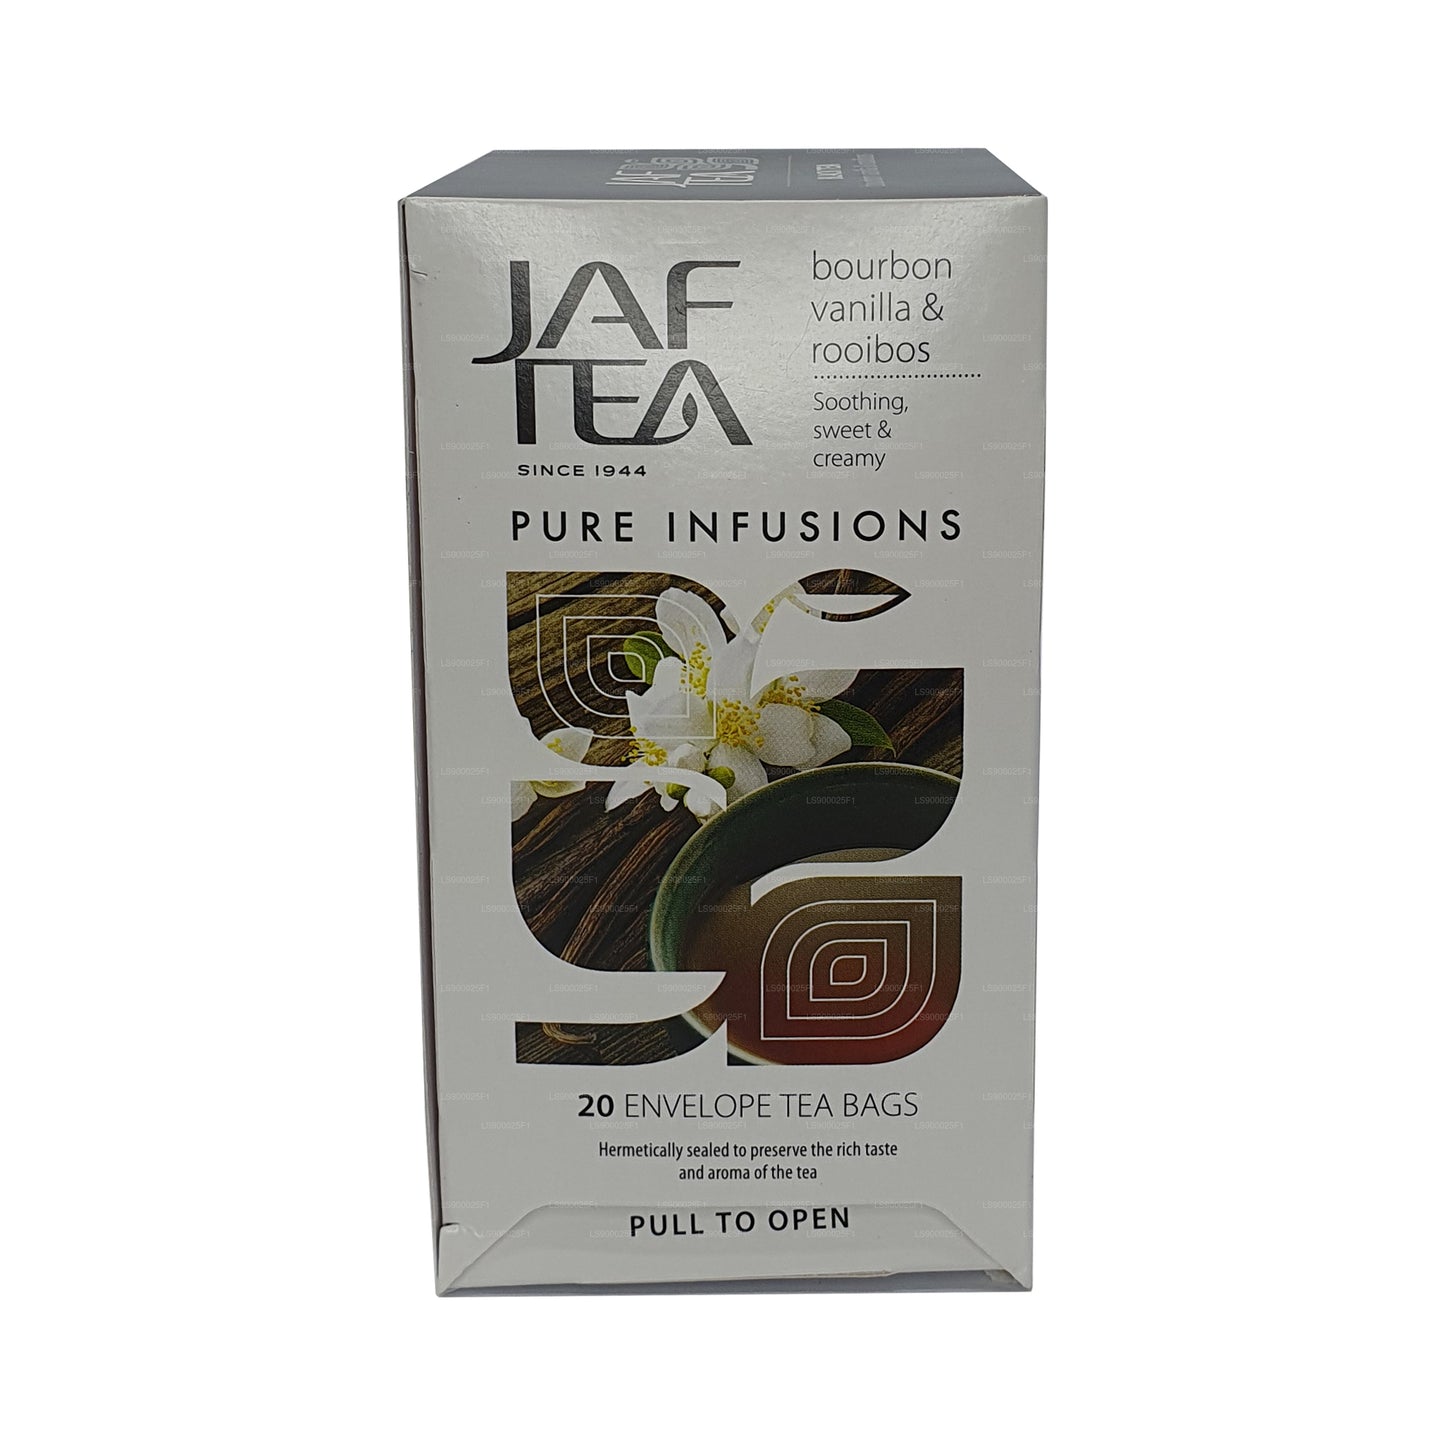 Jaf Tea Pure Infusionsコレクションバーボンバニラルイボス (30g) 20ティーバッグ